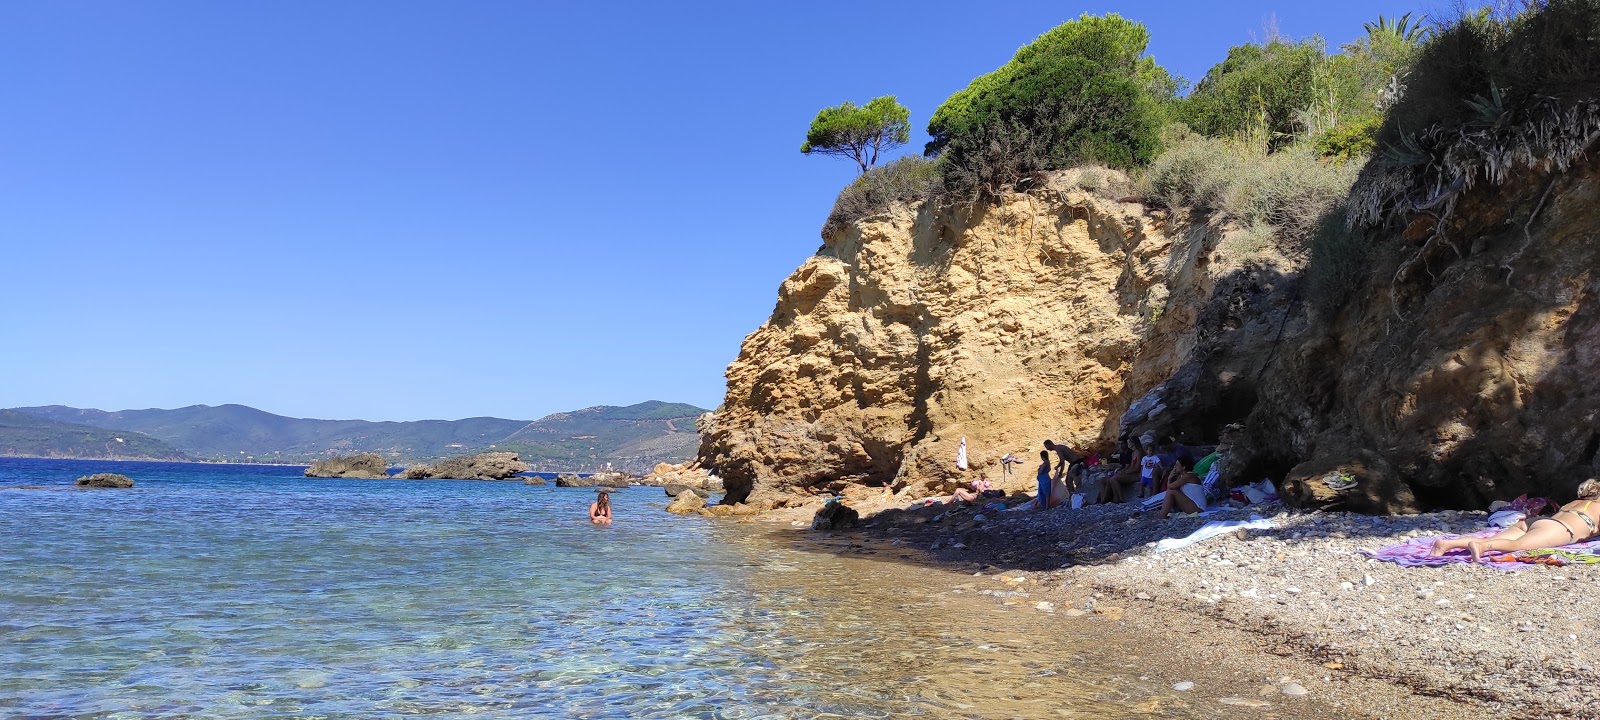 Foto de Peducelli beach localizado em área natural